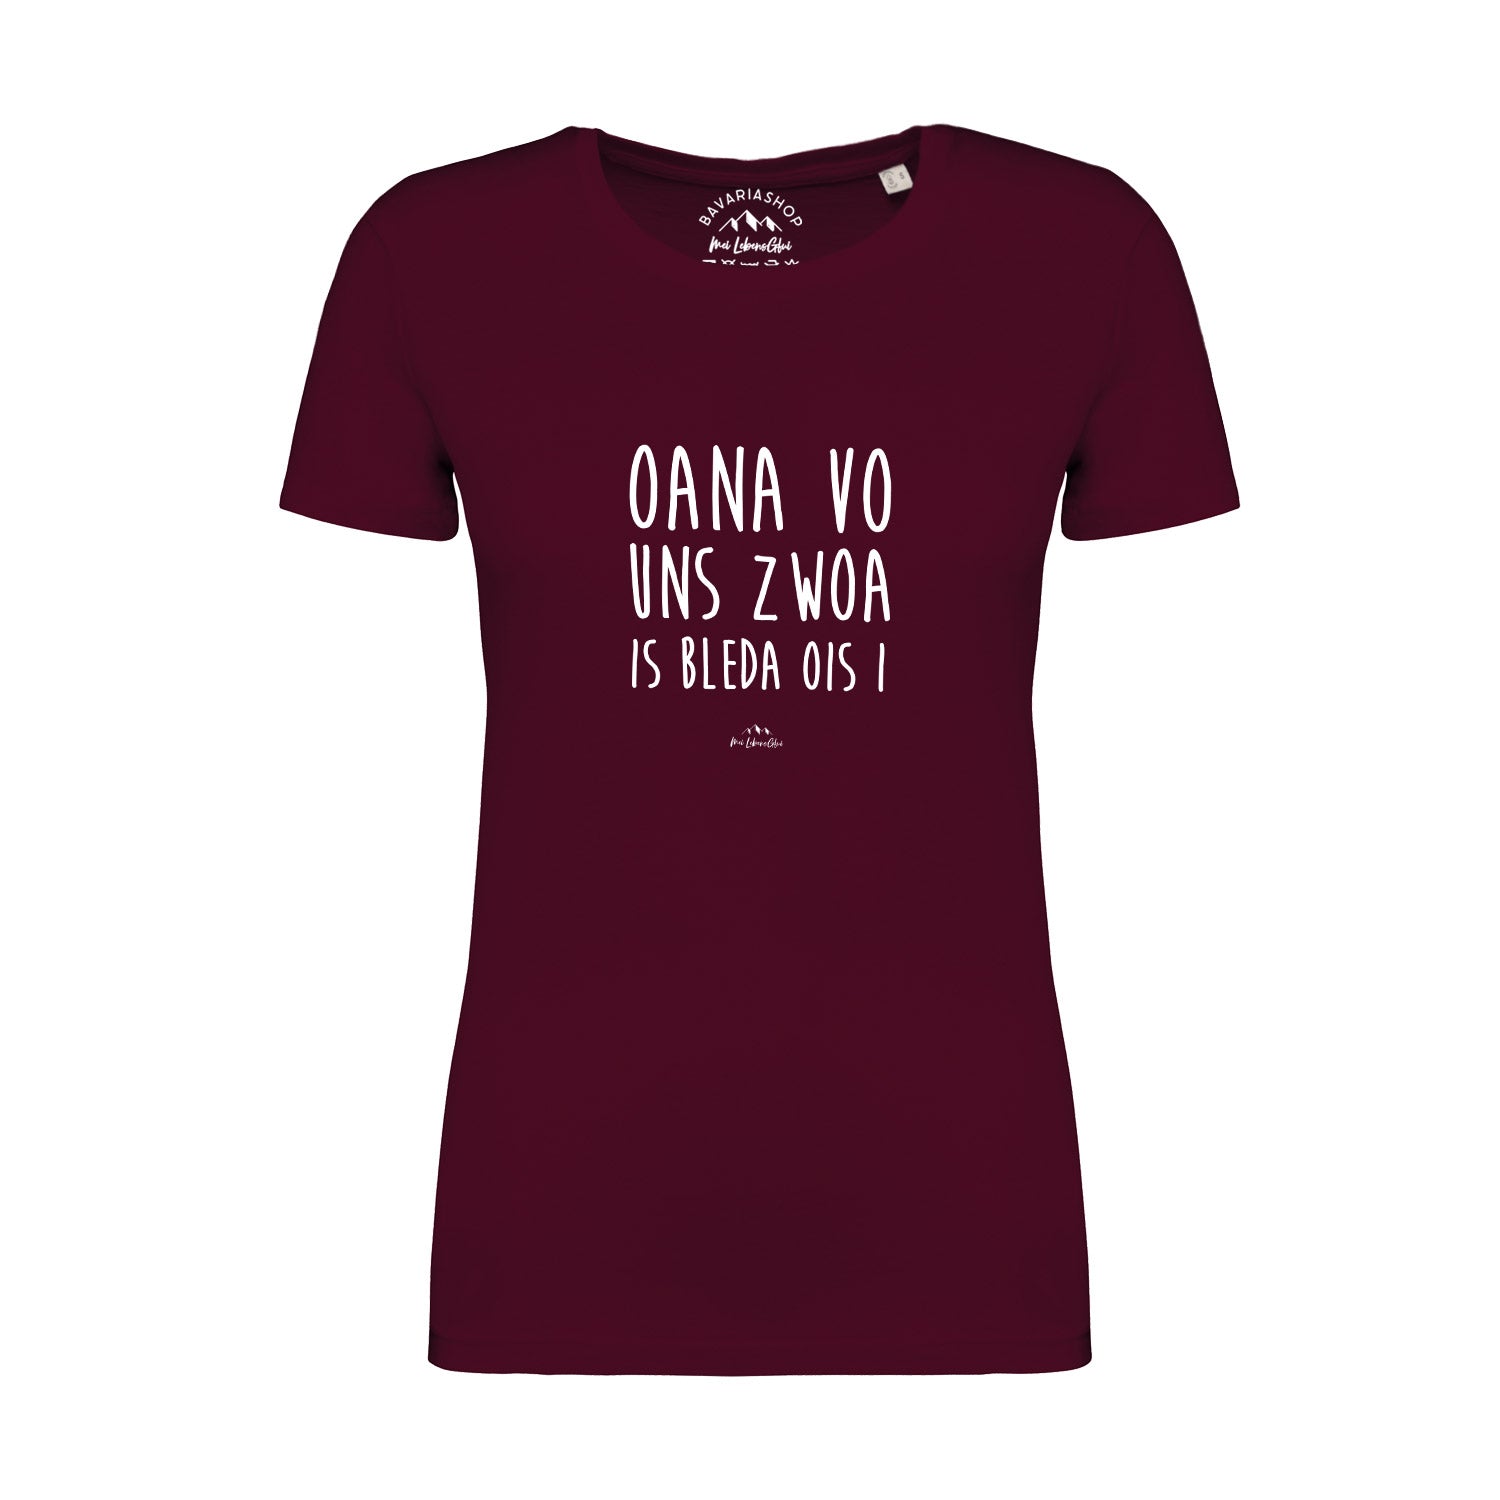 Damen T-Shirt "Oana vo uns zwoa..."